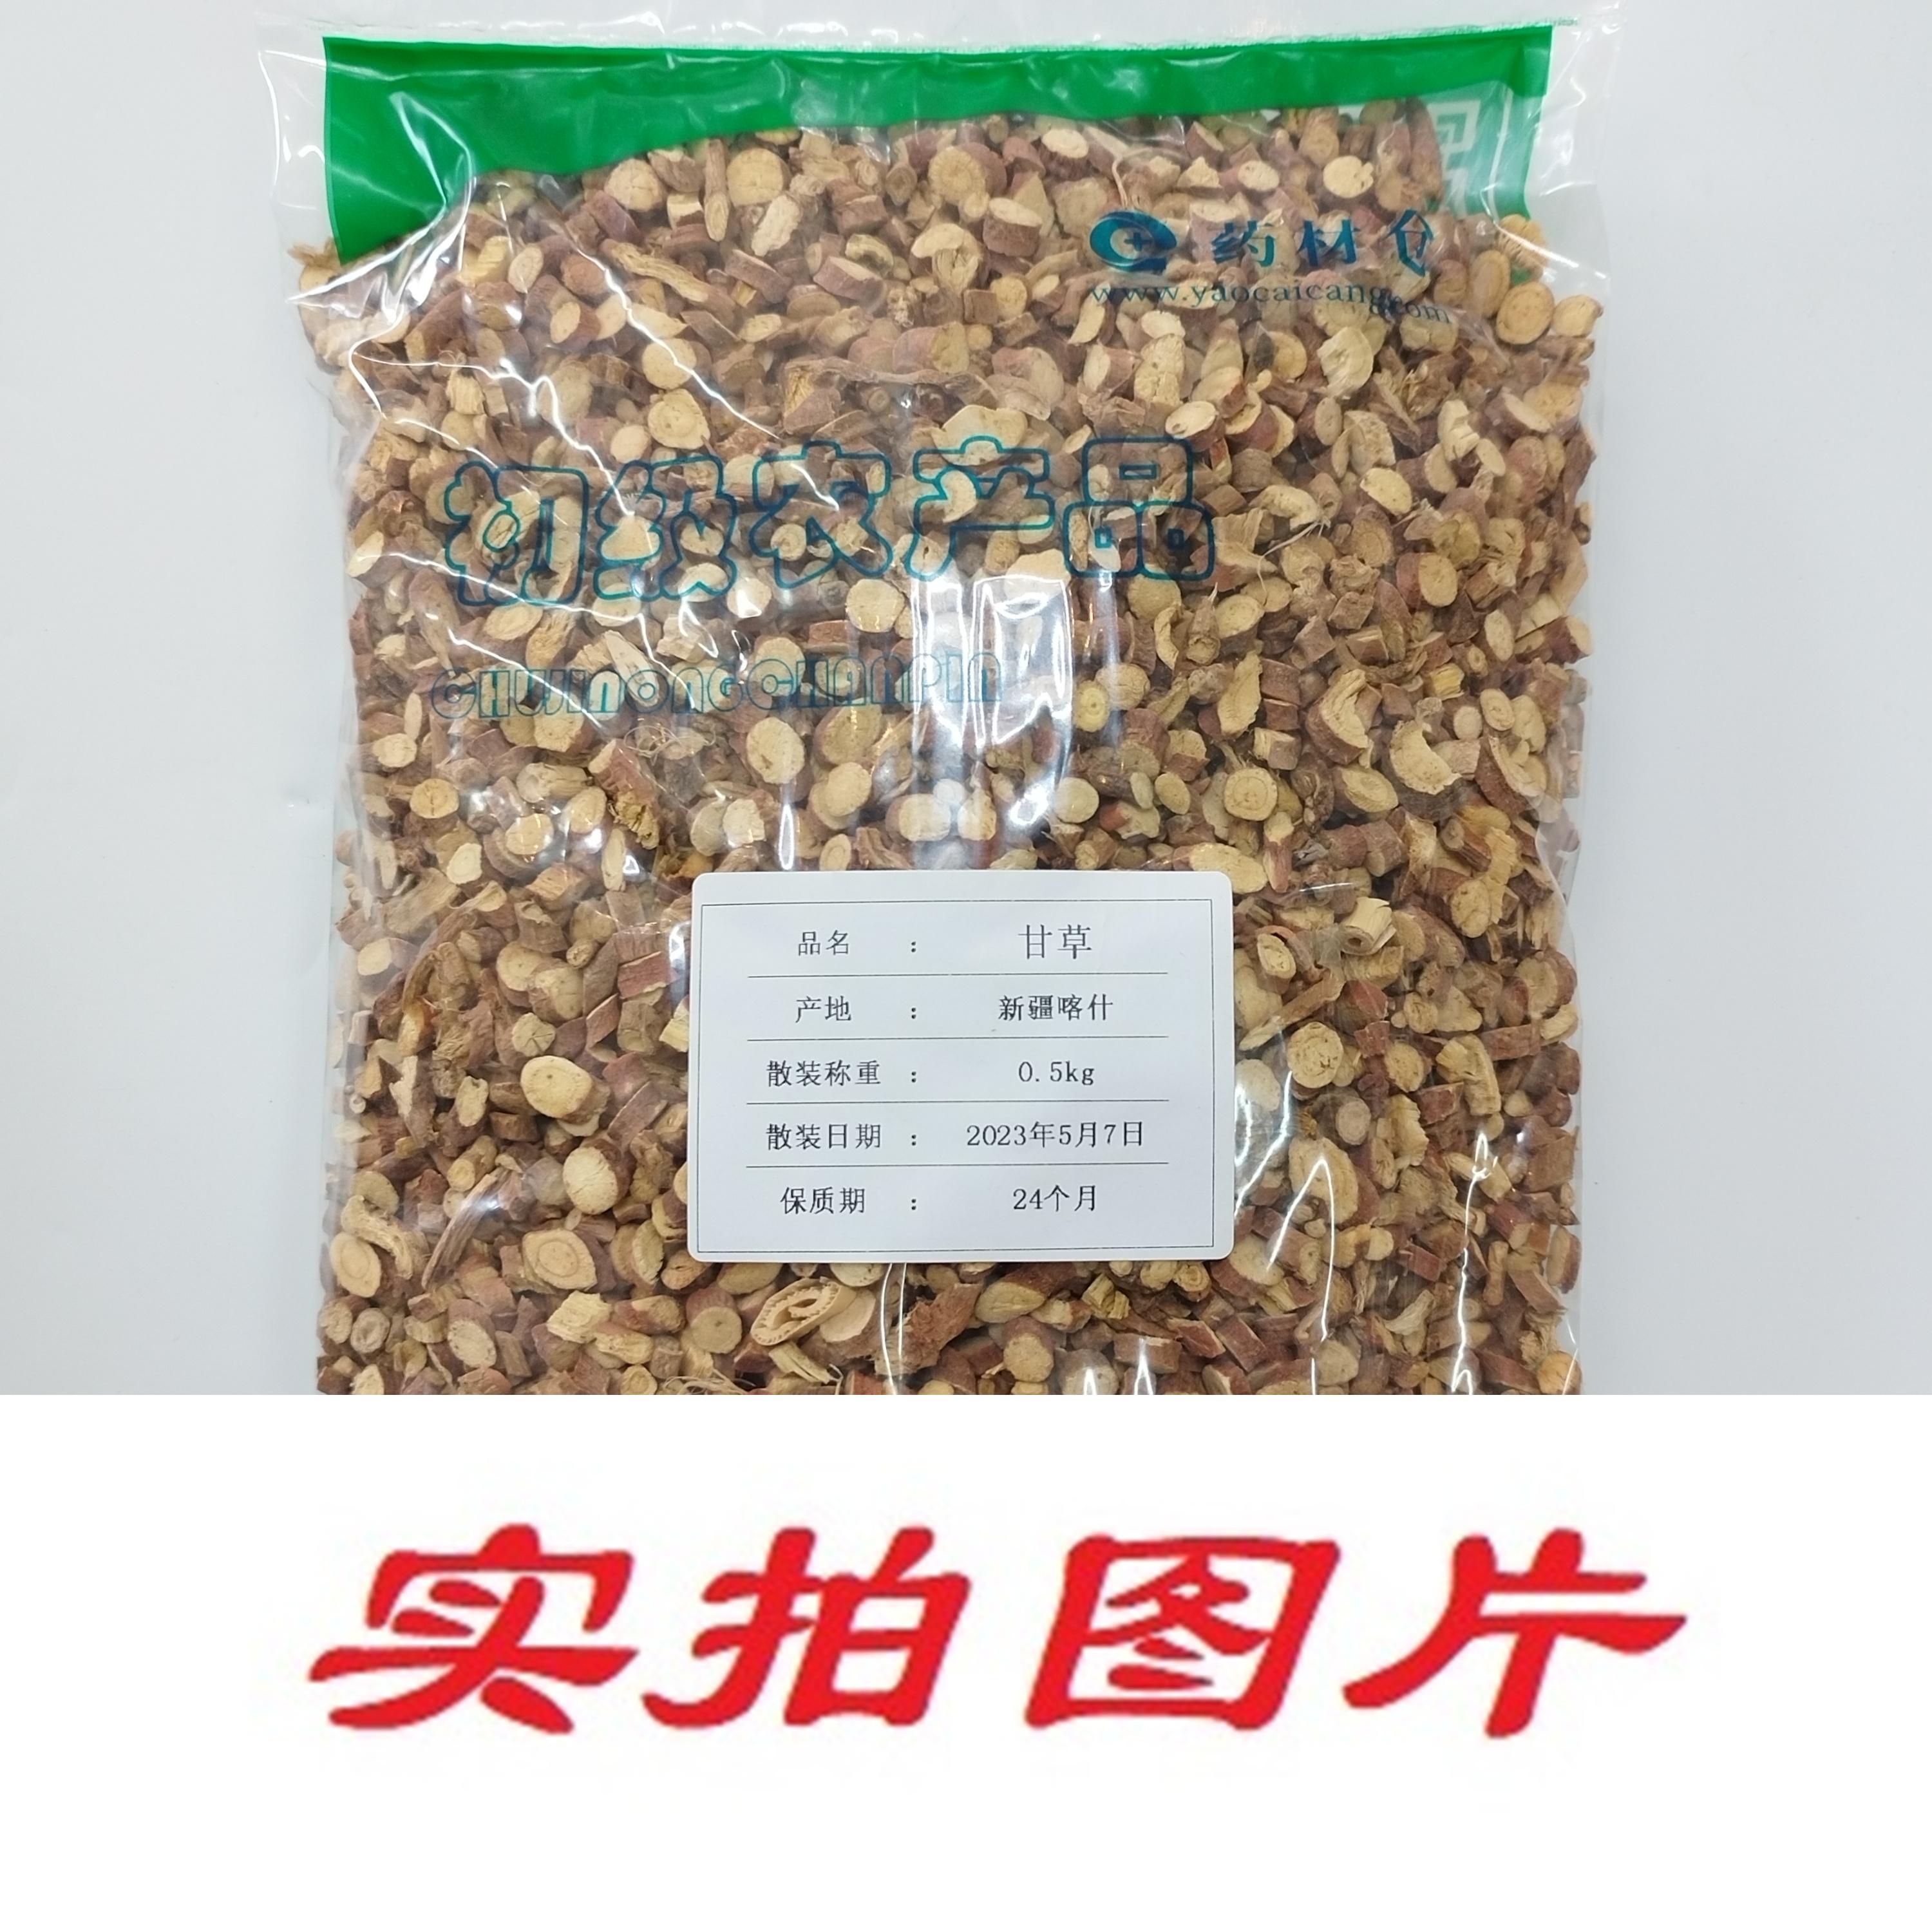 【】甘草0.5kg-农副产品